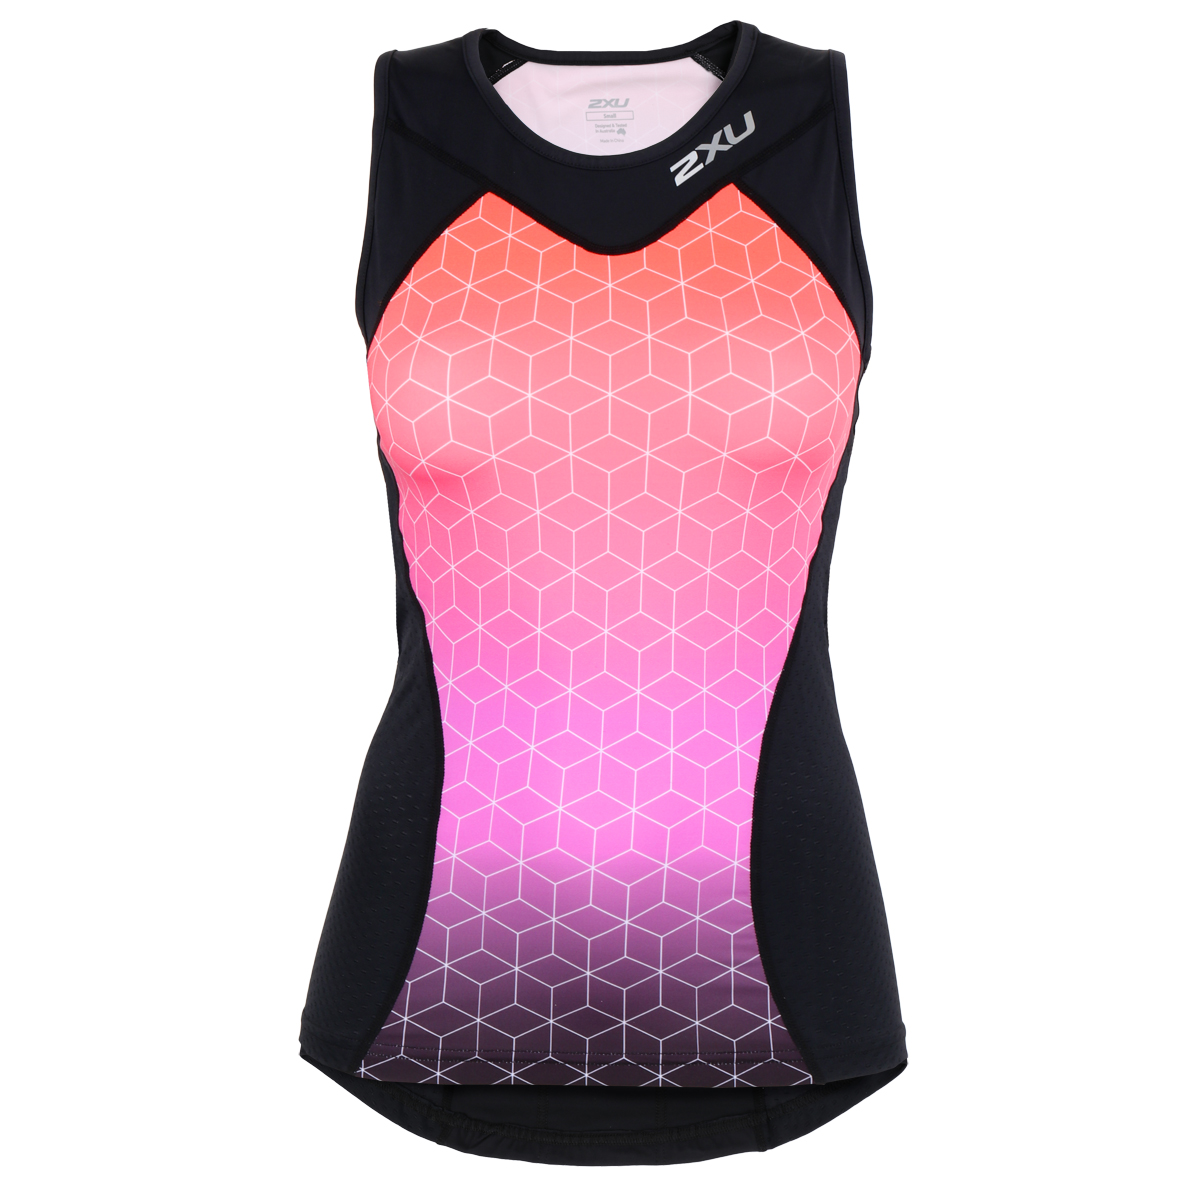 Produktbild von 2XU Active Tri Damen Triathlonshirt - black/sunset ombre